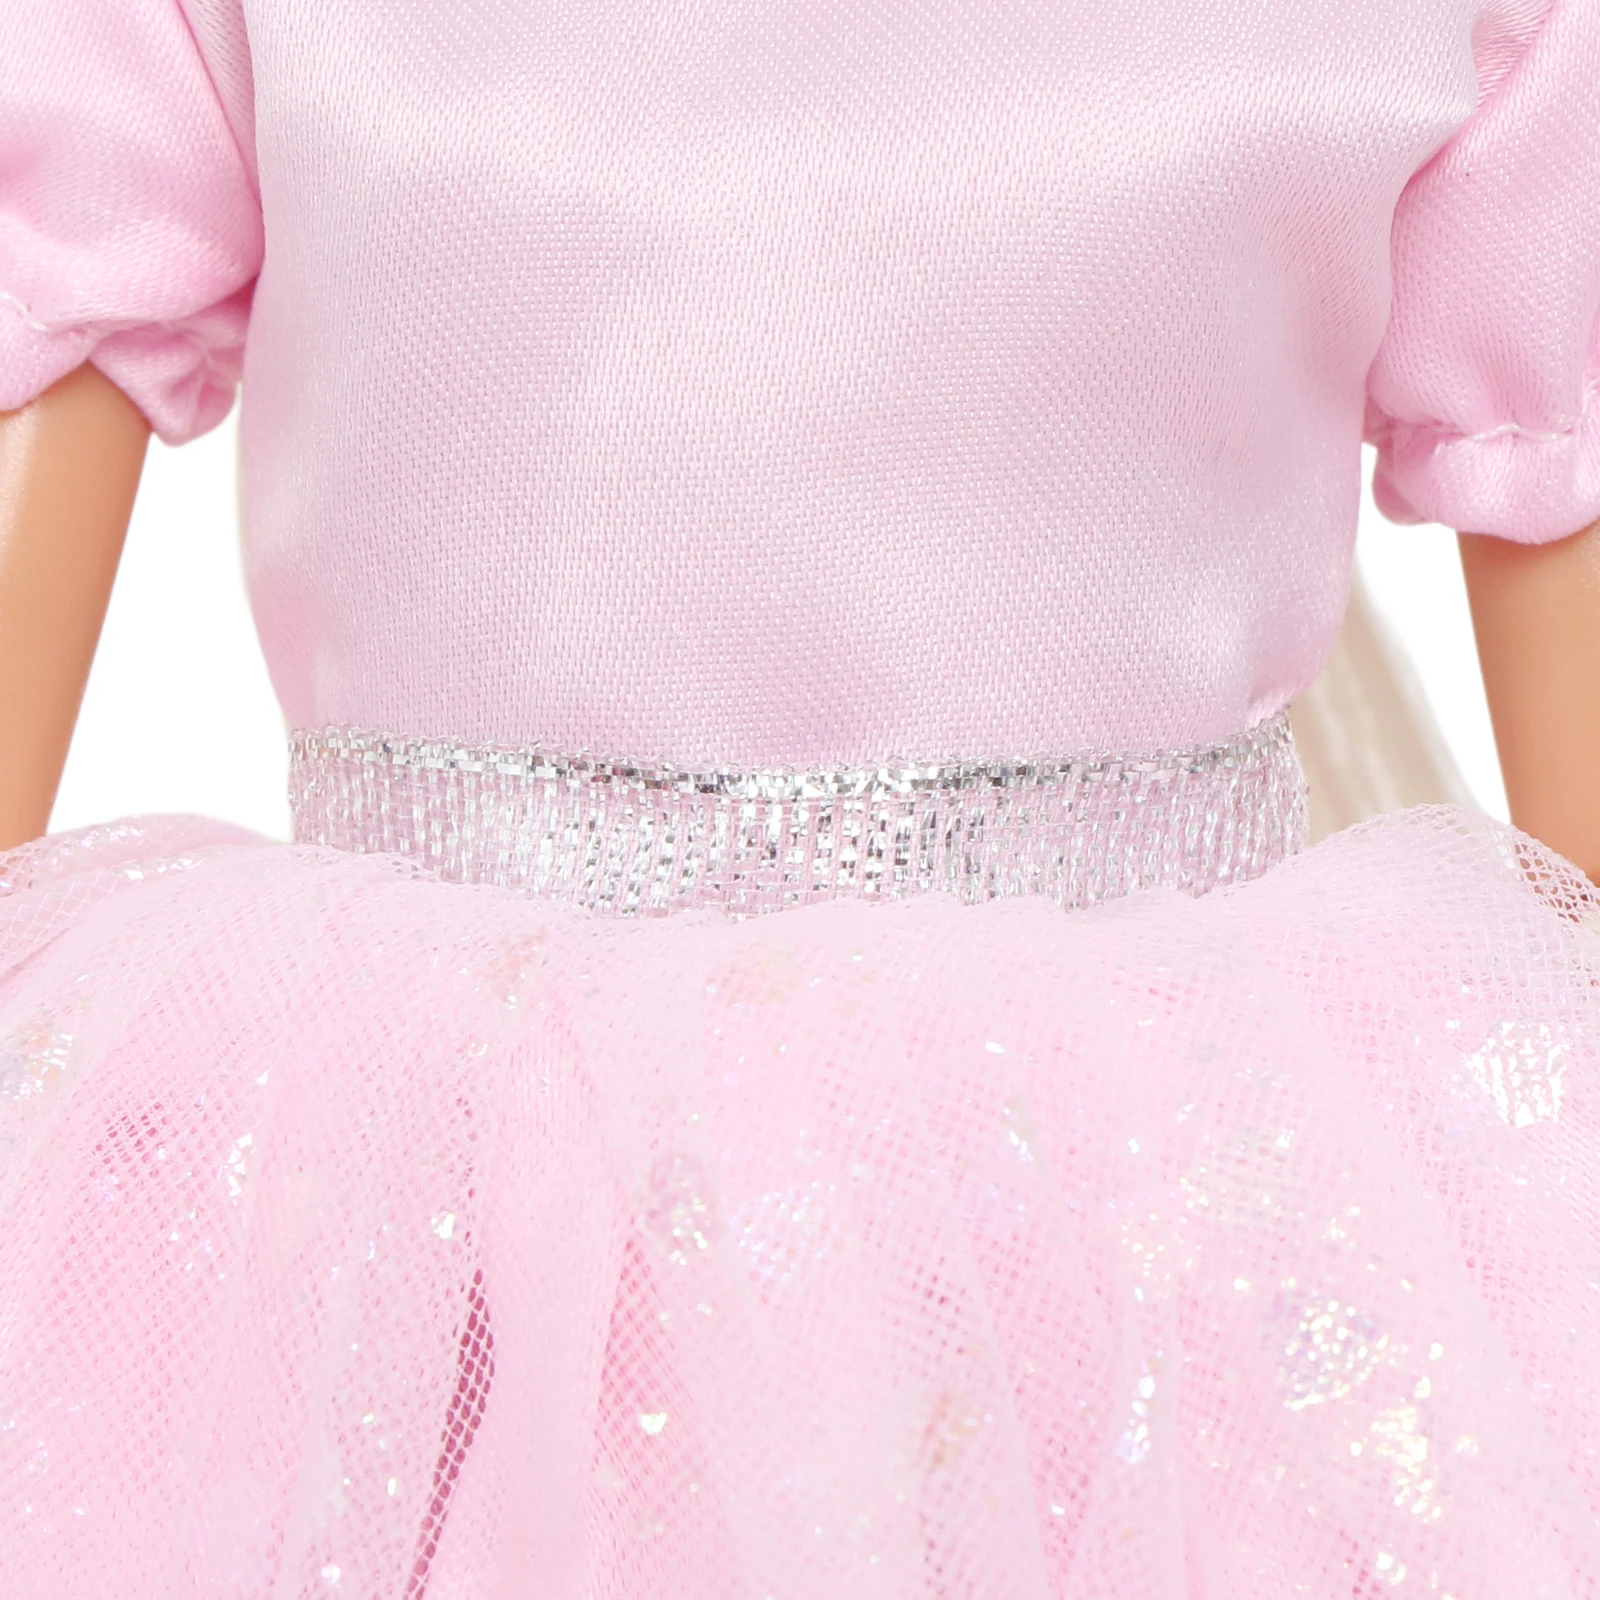 1 Σύνολο Πριγκίπισσα Φόρεμα Κούκλα Φόρεμα Ροζ Γυαλιστερό Καρδιά Εκτυπώστε το Γάμο Φούστα Πάρτι Ρούχα για την Barbie Κούκλα Αξεσουάρ Κορίτσι Παιδιά Δώρο Παιχνιδιών